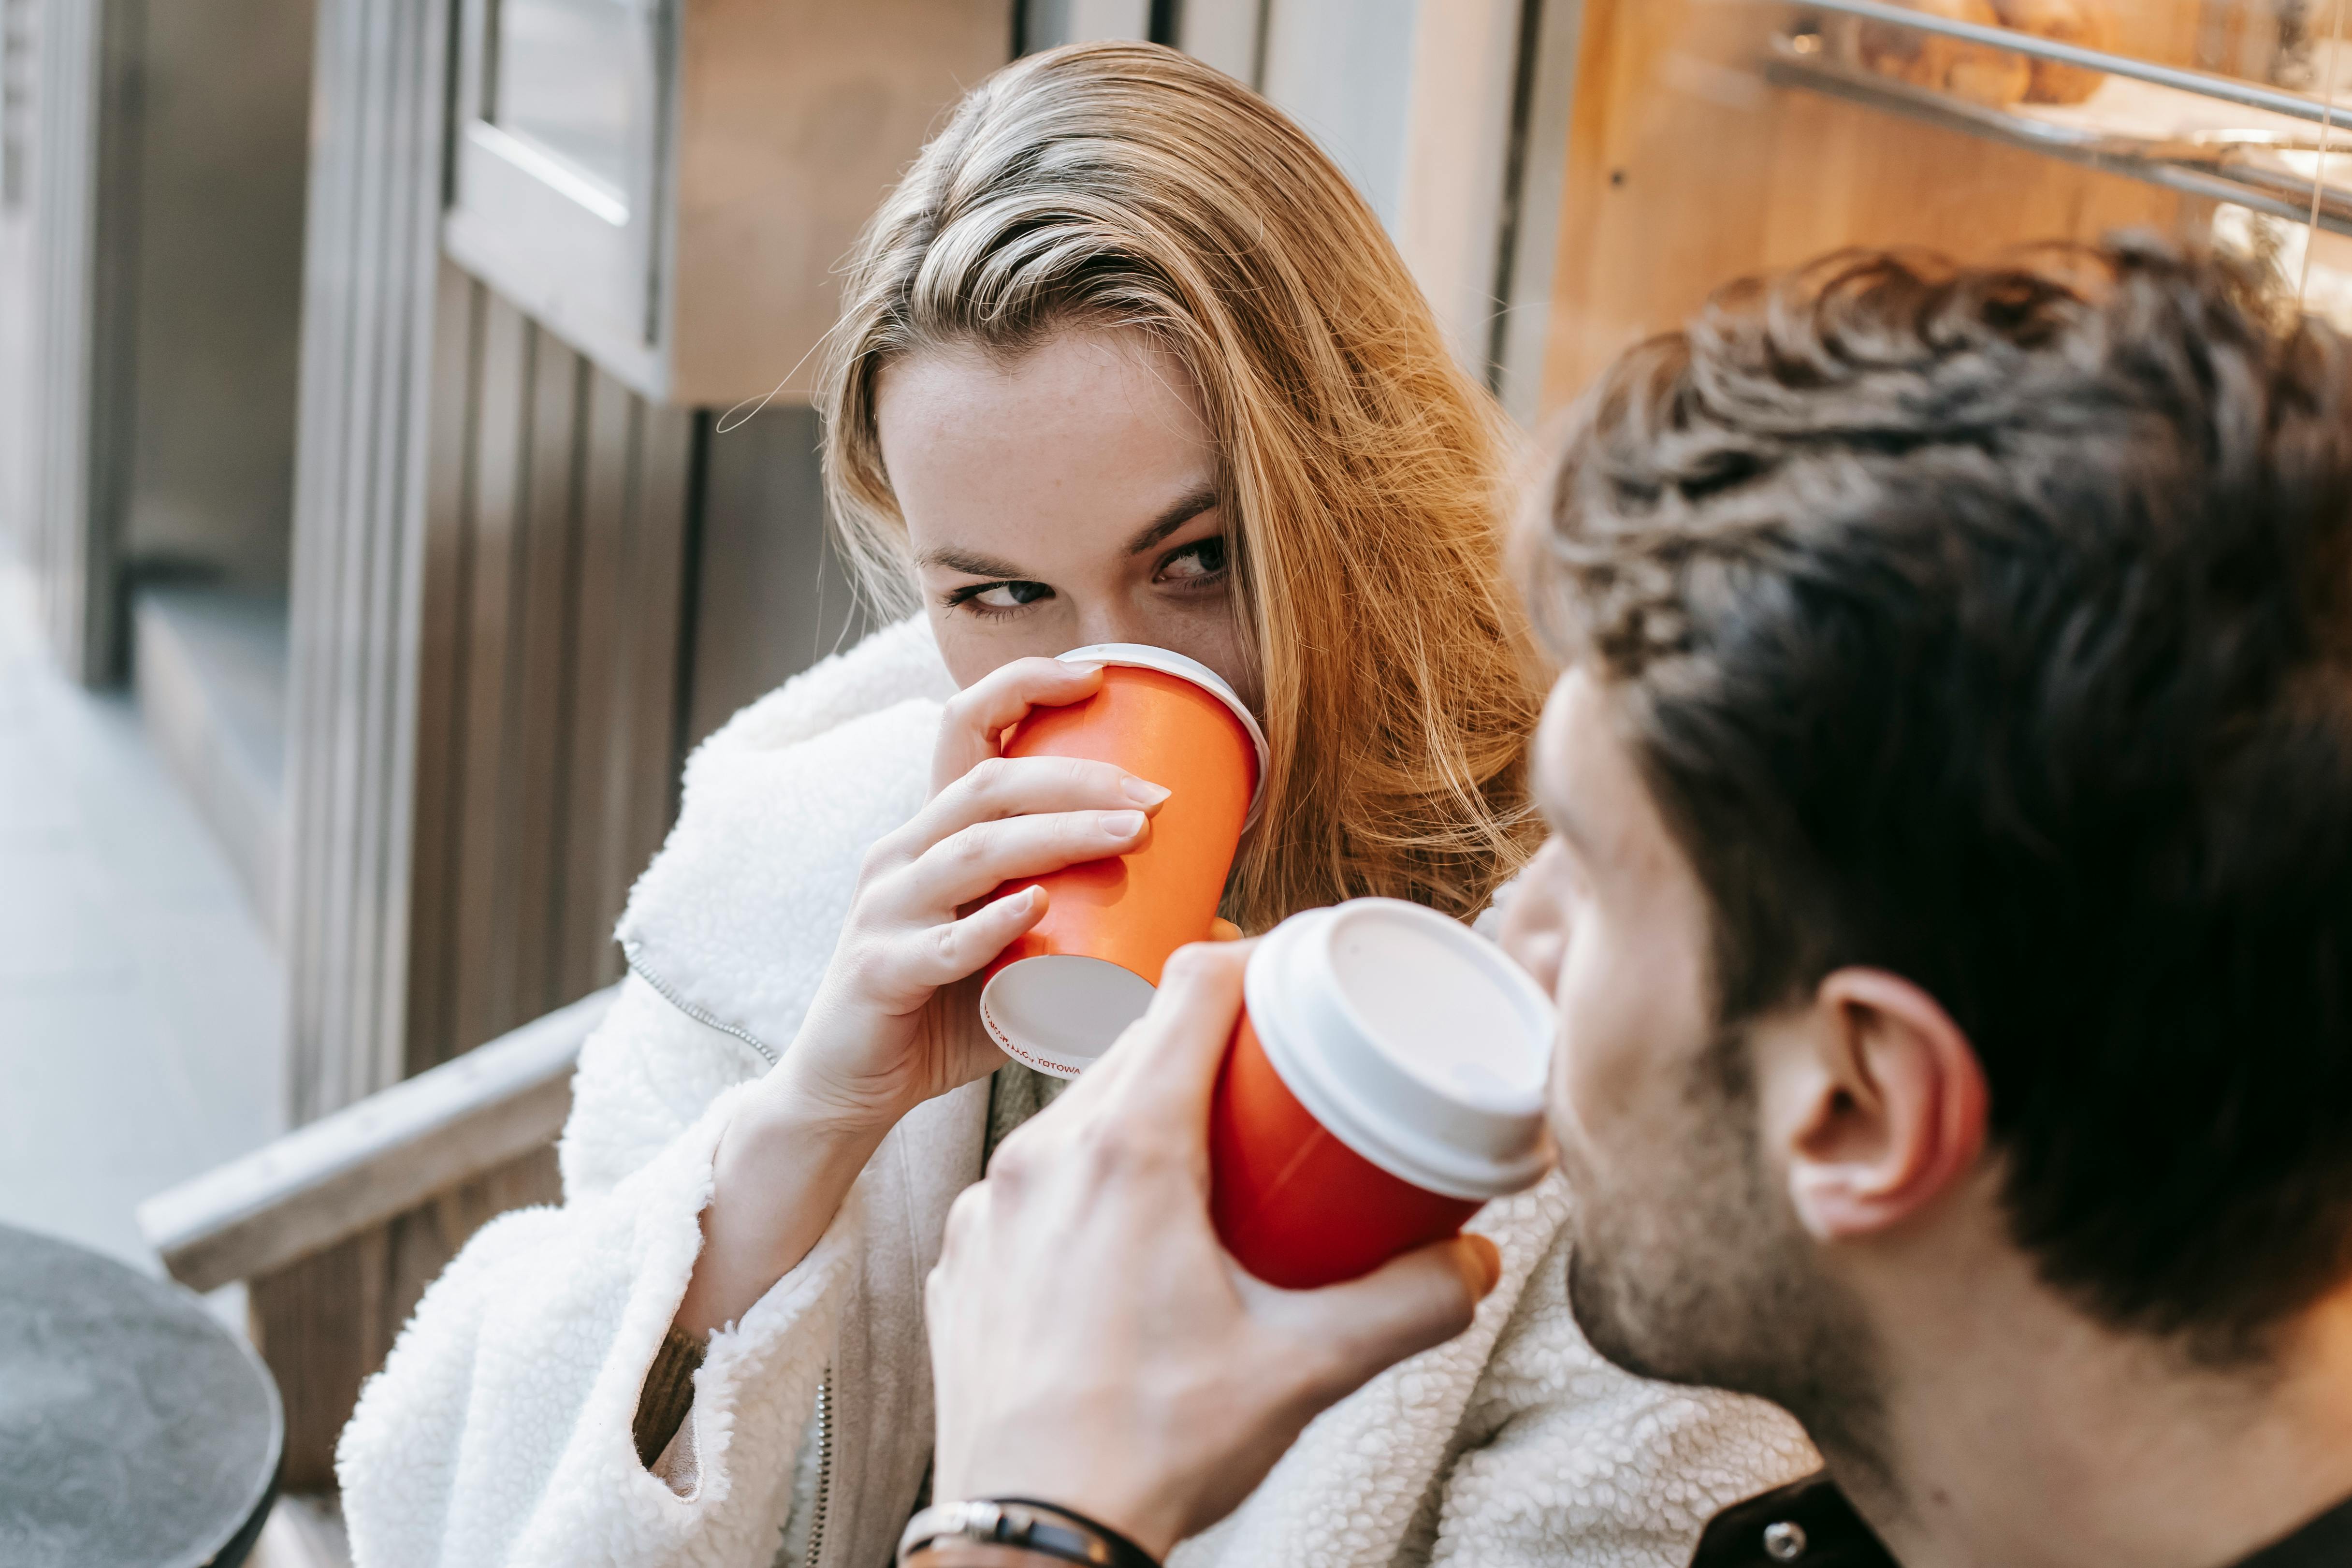 Dos personas tomando café | Fuente: Pexels